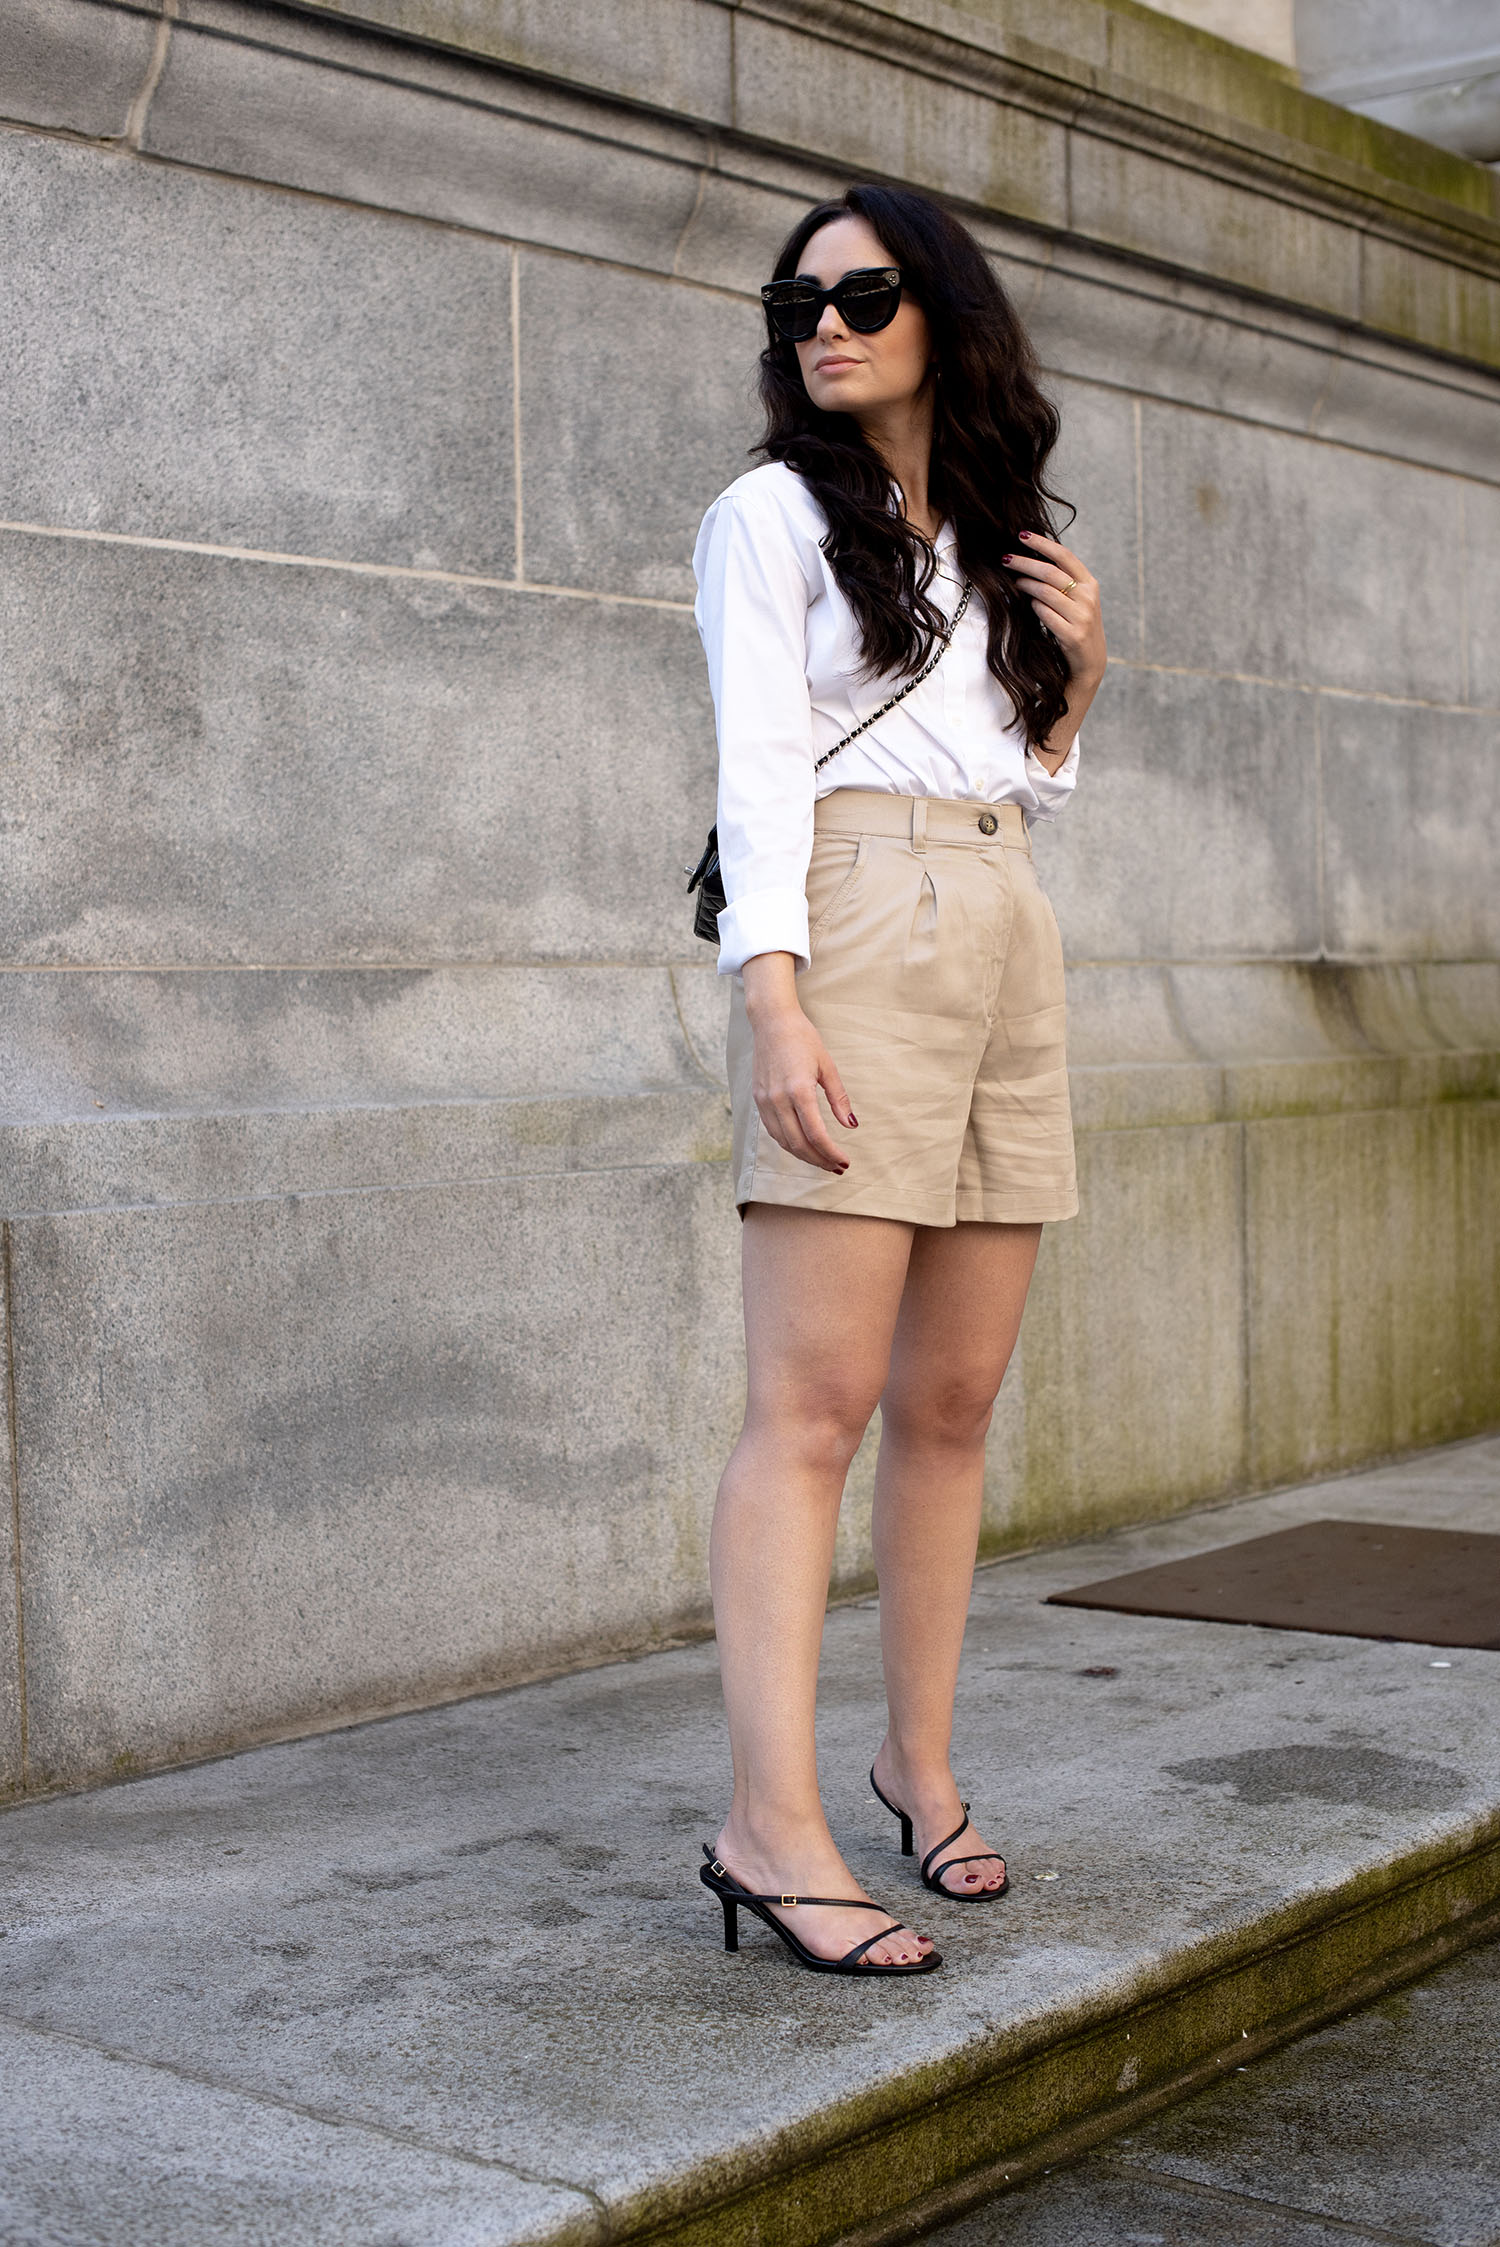 Coco & Vera - Uniqlo blouse, H&M shorts, Zara sandals